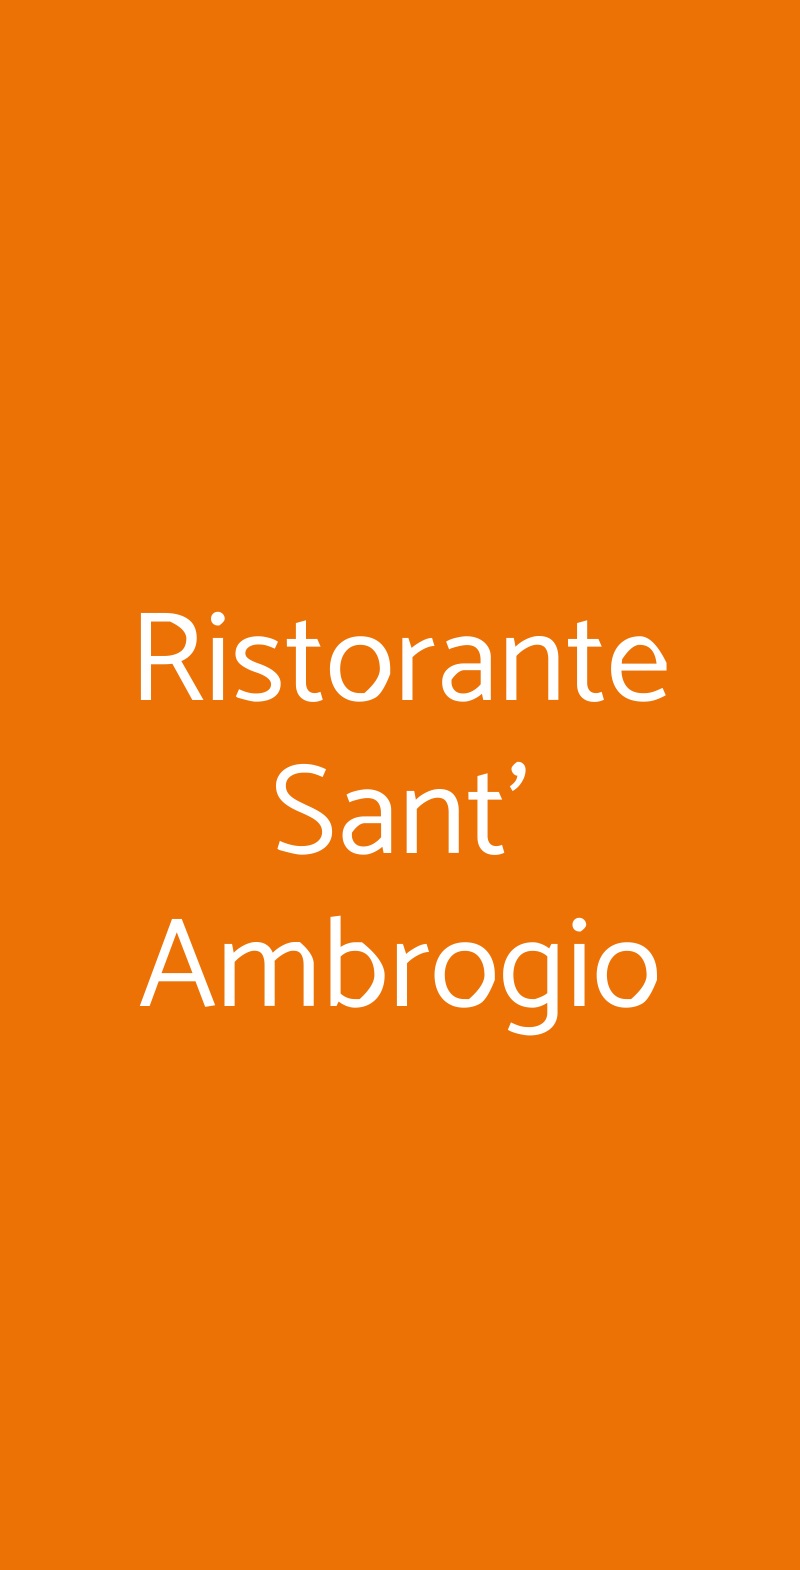 Ristorante Sant' Ambrogio Firenze menù 1 pagina